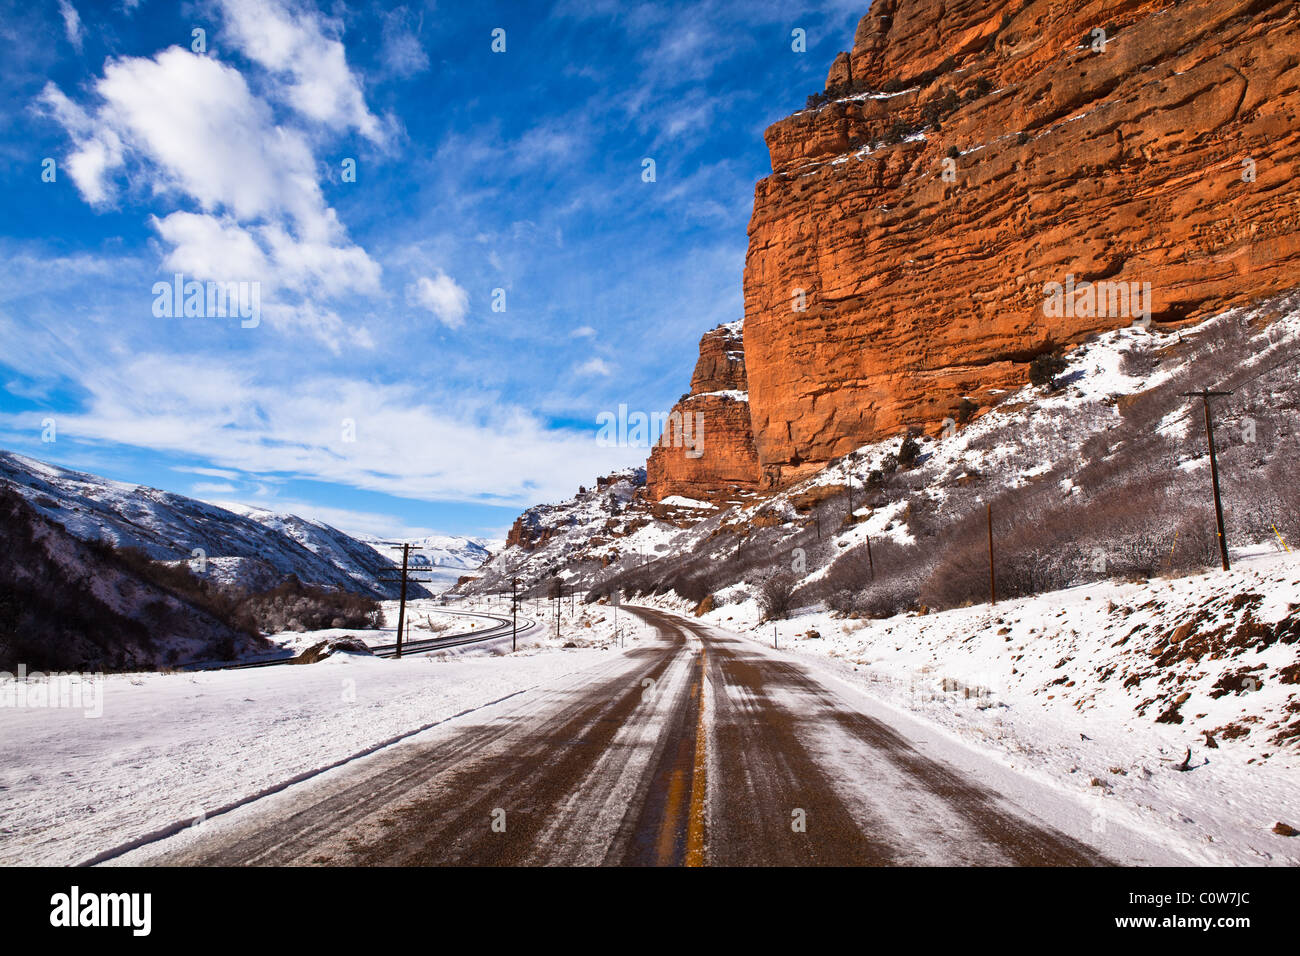 A beautiful winter scene taken from railroad tracks in the red rocks near Echo, Utah Stock Photo